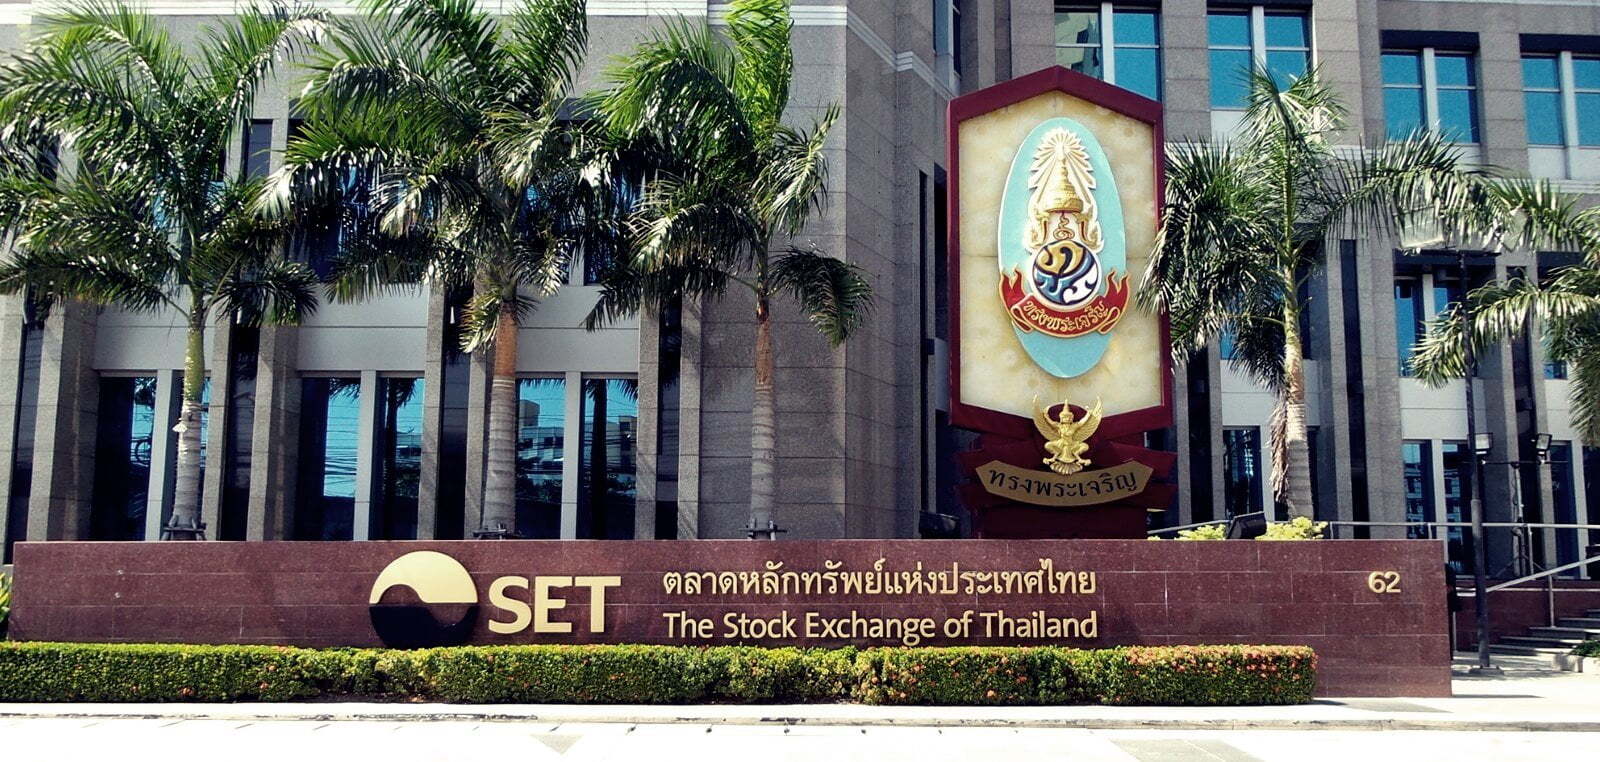 Sở giao dịch chứng khoán Thái Lan (SET) sắp khởi động sàn giao dịch tài sản mã hóa 